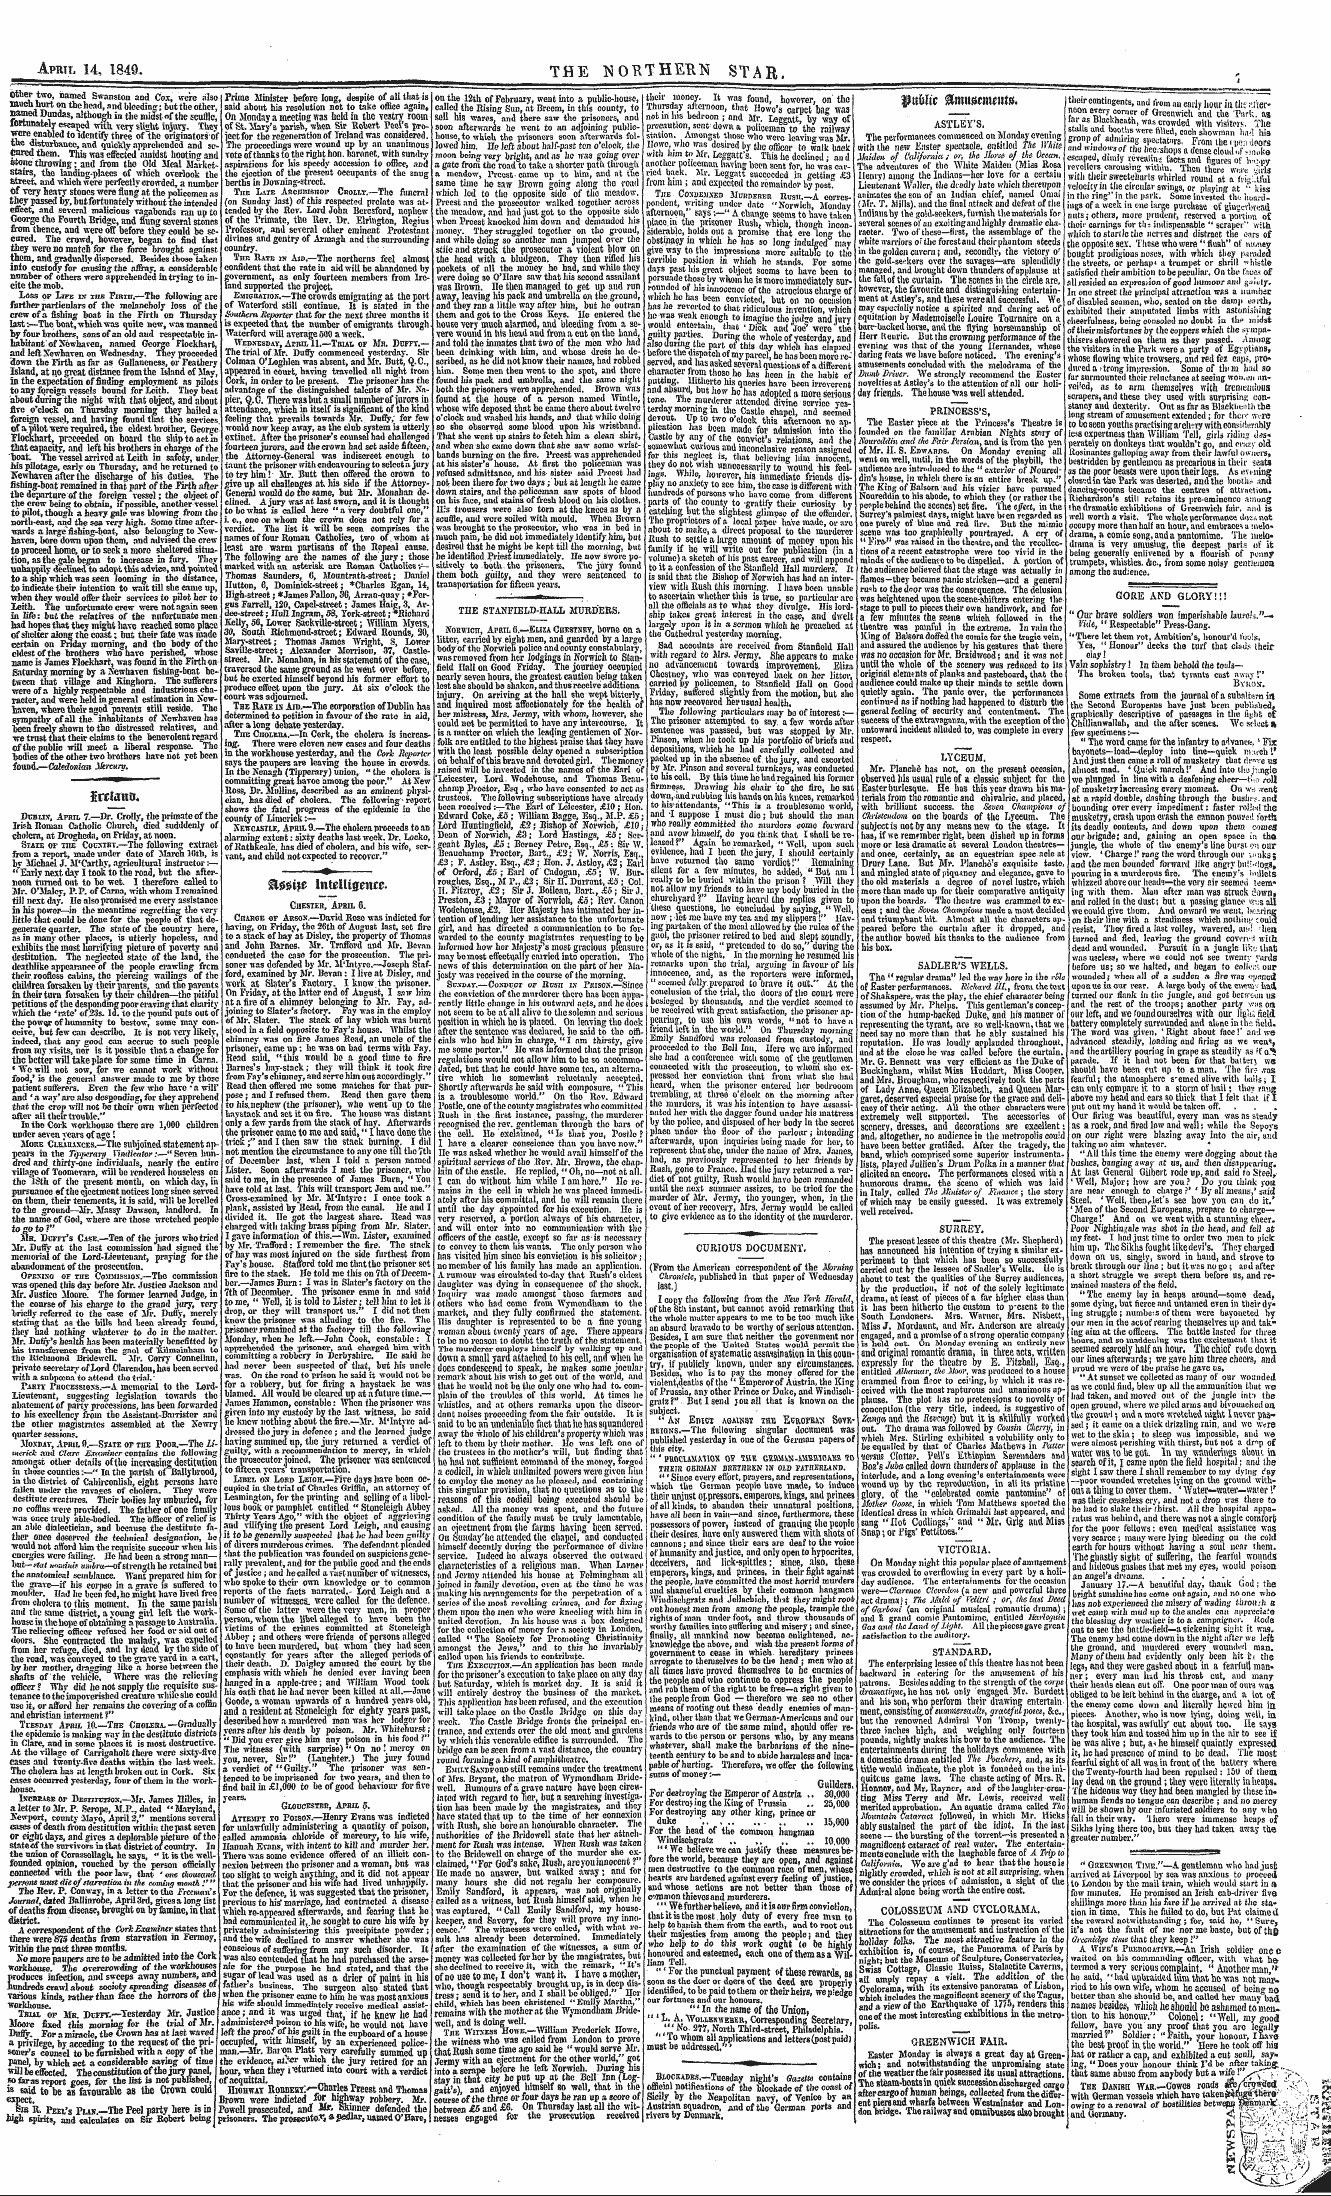 Northern Star (1837-1852): jS F Y, 3rd edition - Jrelawfl.